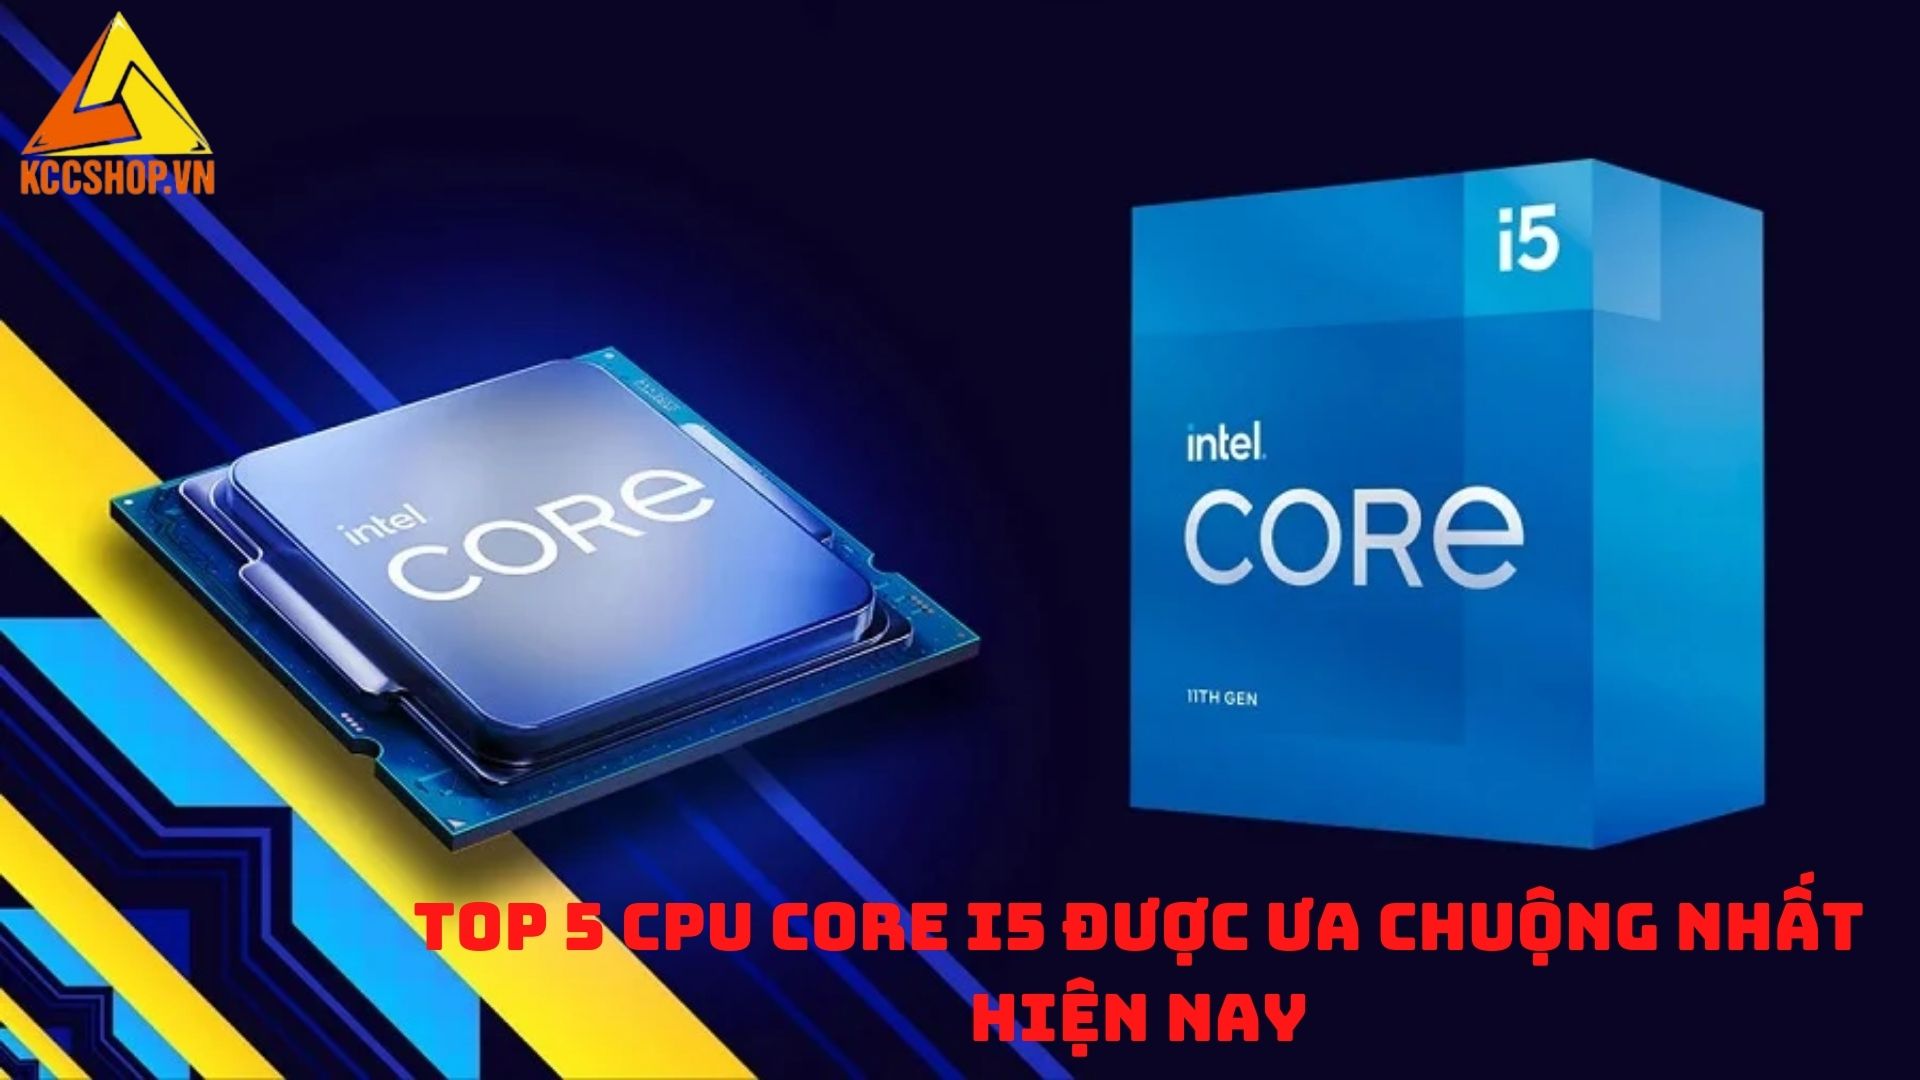 Top 5 CPU Core i5 được ưa chuộng nhất hiện nay